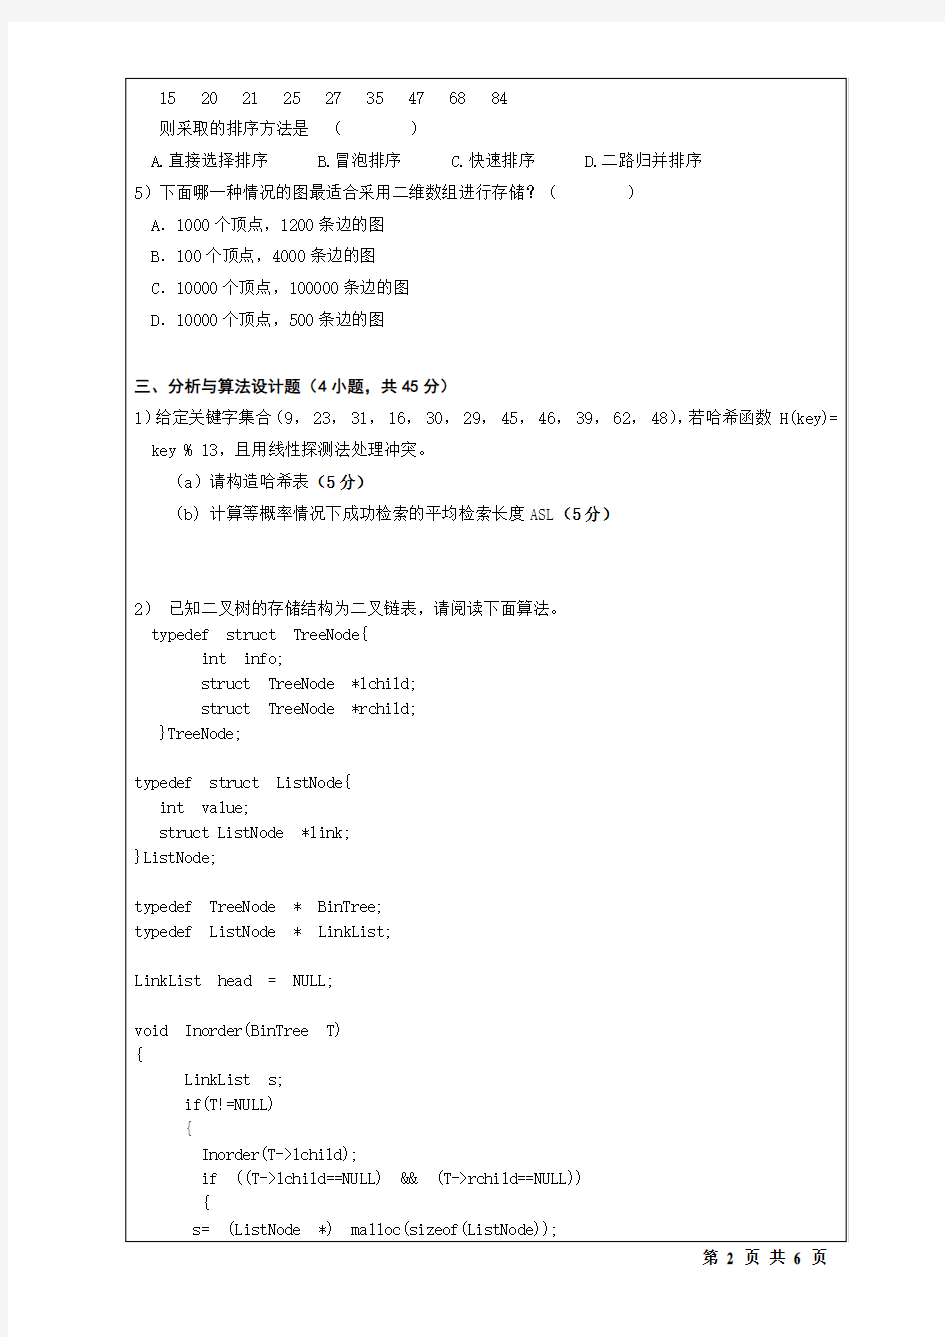 桂林电子科技大学 823数据结构+操作系统(2016-A) 2016年硕士研究生考研真题